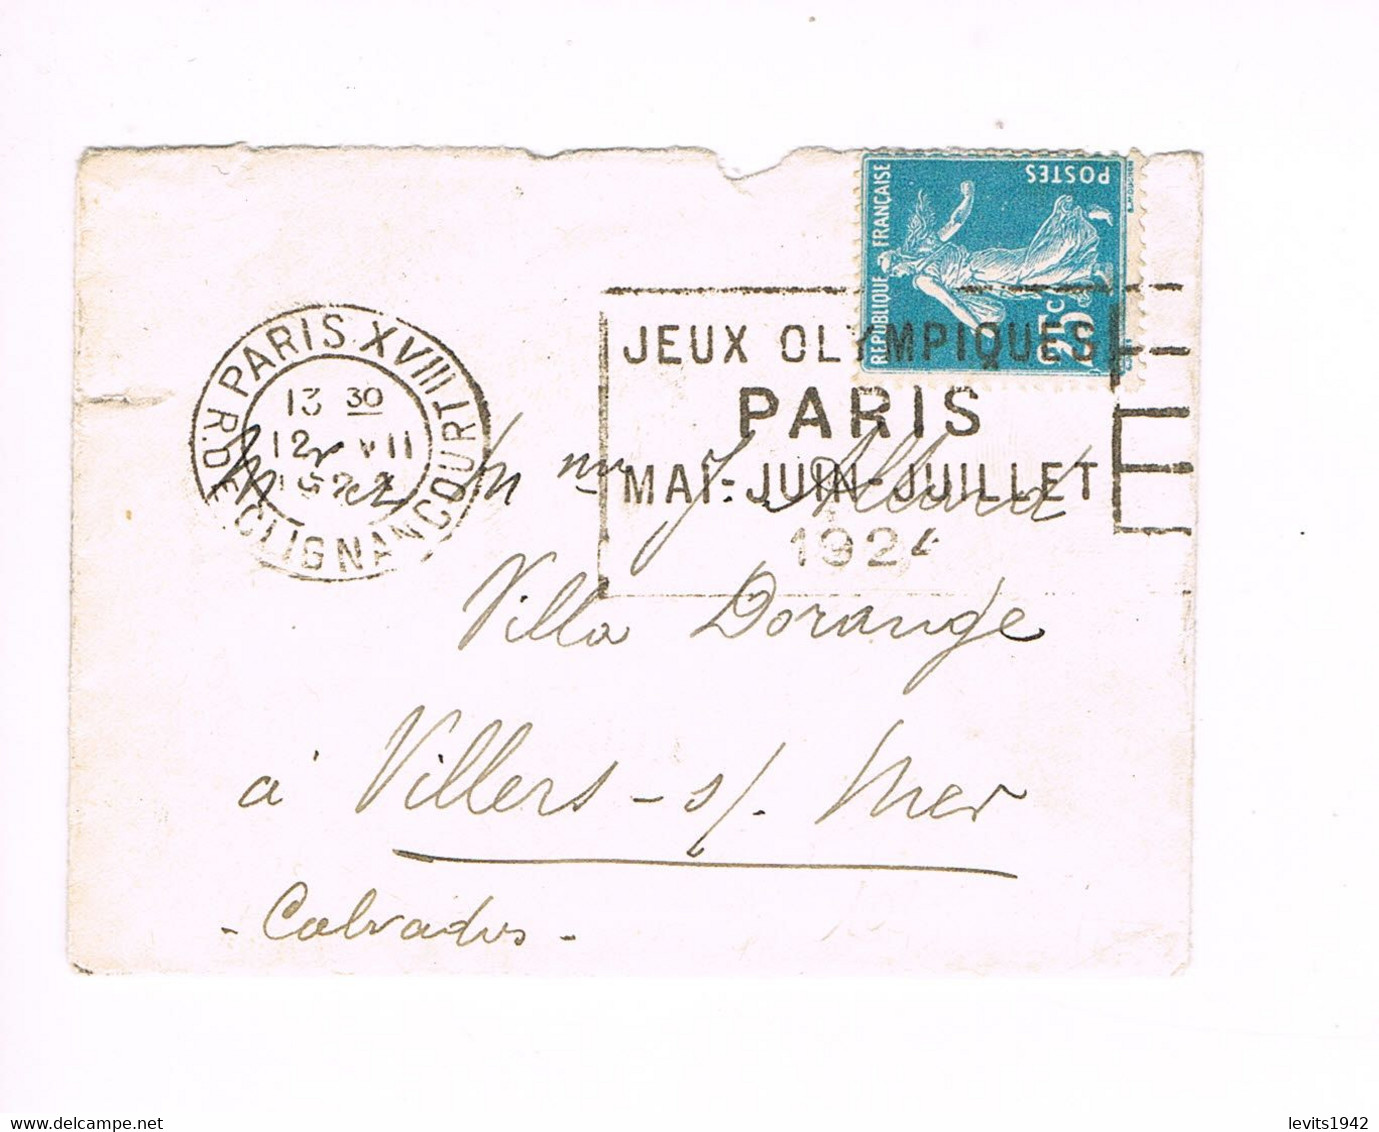 JEUX OLYMPIQUES 1924 -  MARQUE POSTALE - ATHLETISME - ESCRIME - LUTTE - POLO - YACHTING - JOUR DE COMPETITION - 12-07 - - Sommer 1924: Paris